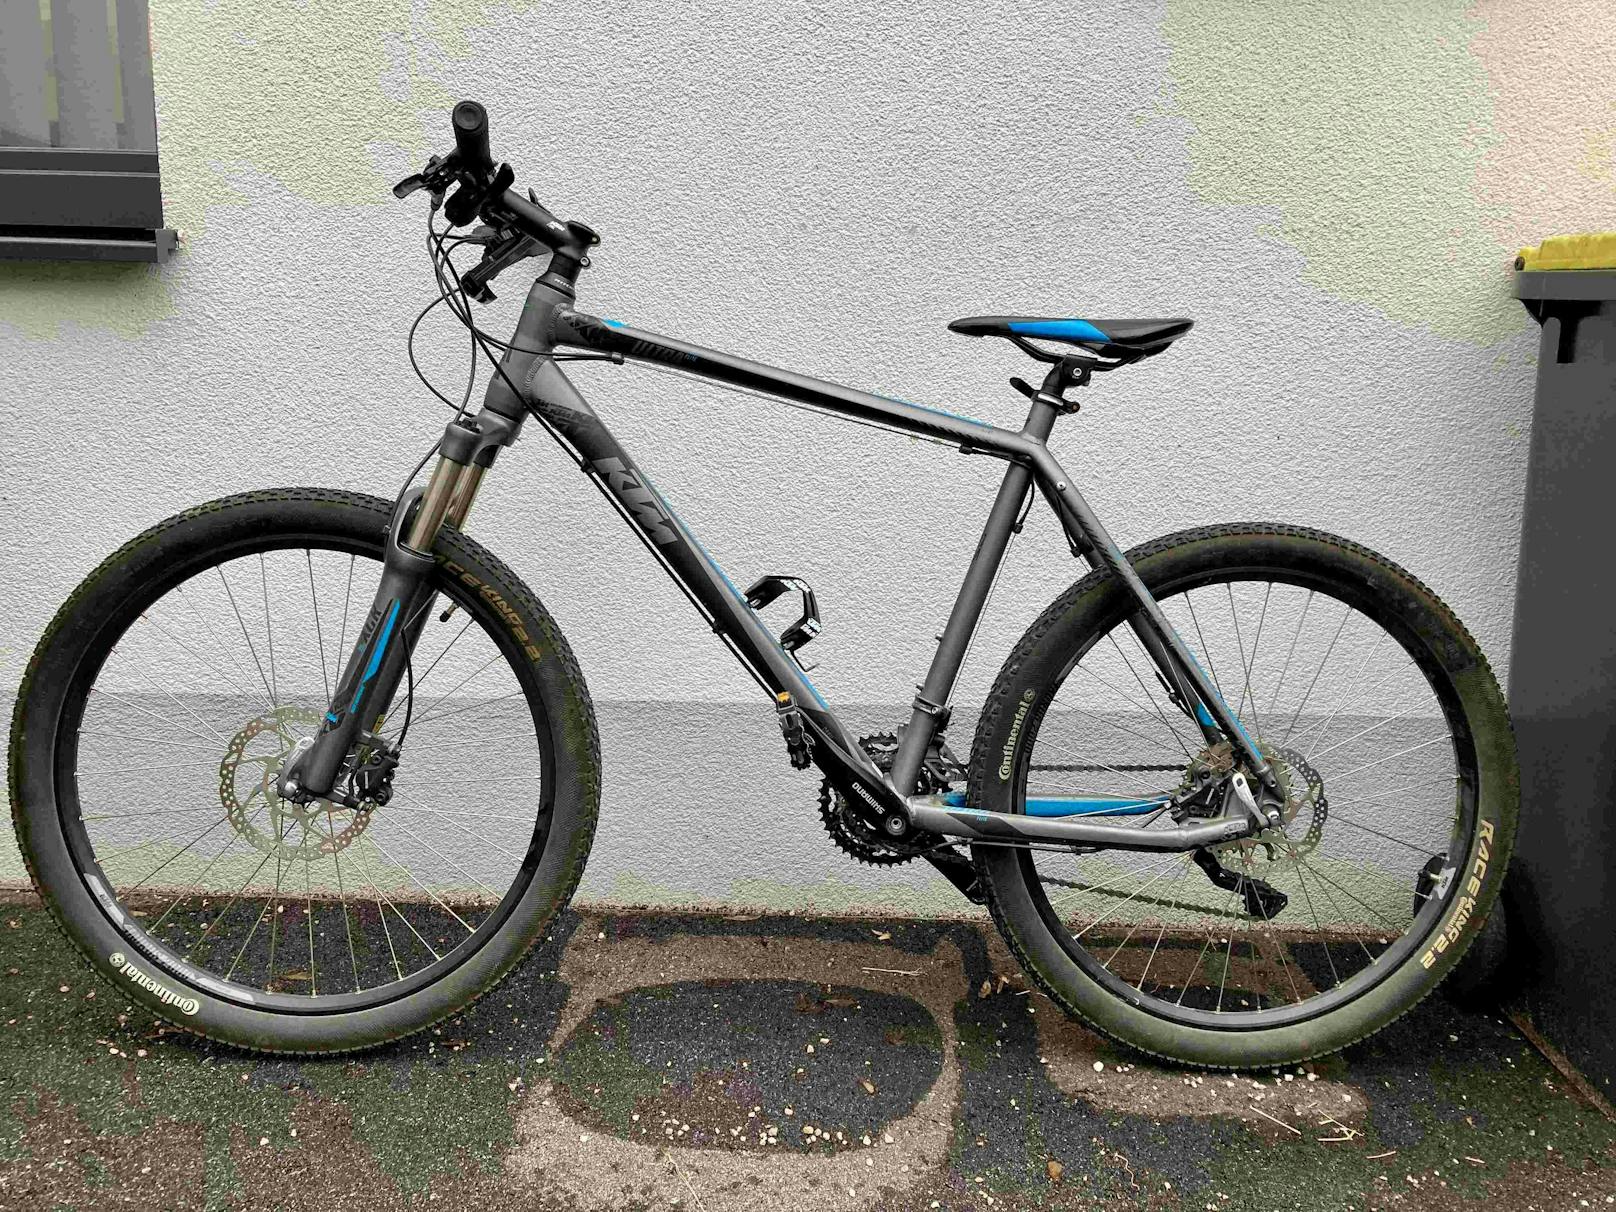 Dieses Fahrrad der Marke KTM ist eines der gestohlenen Bikes. Der Besitzer konnte aber noch nicht gefunden werden.